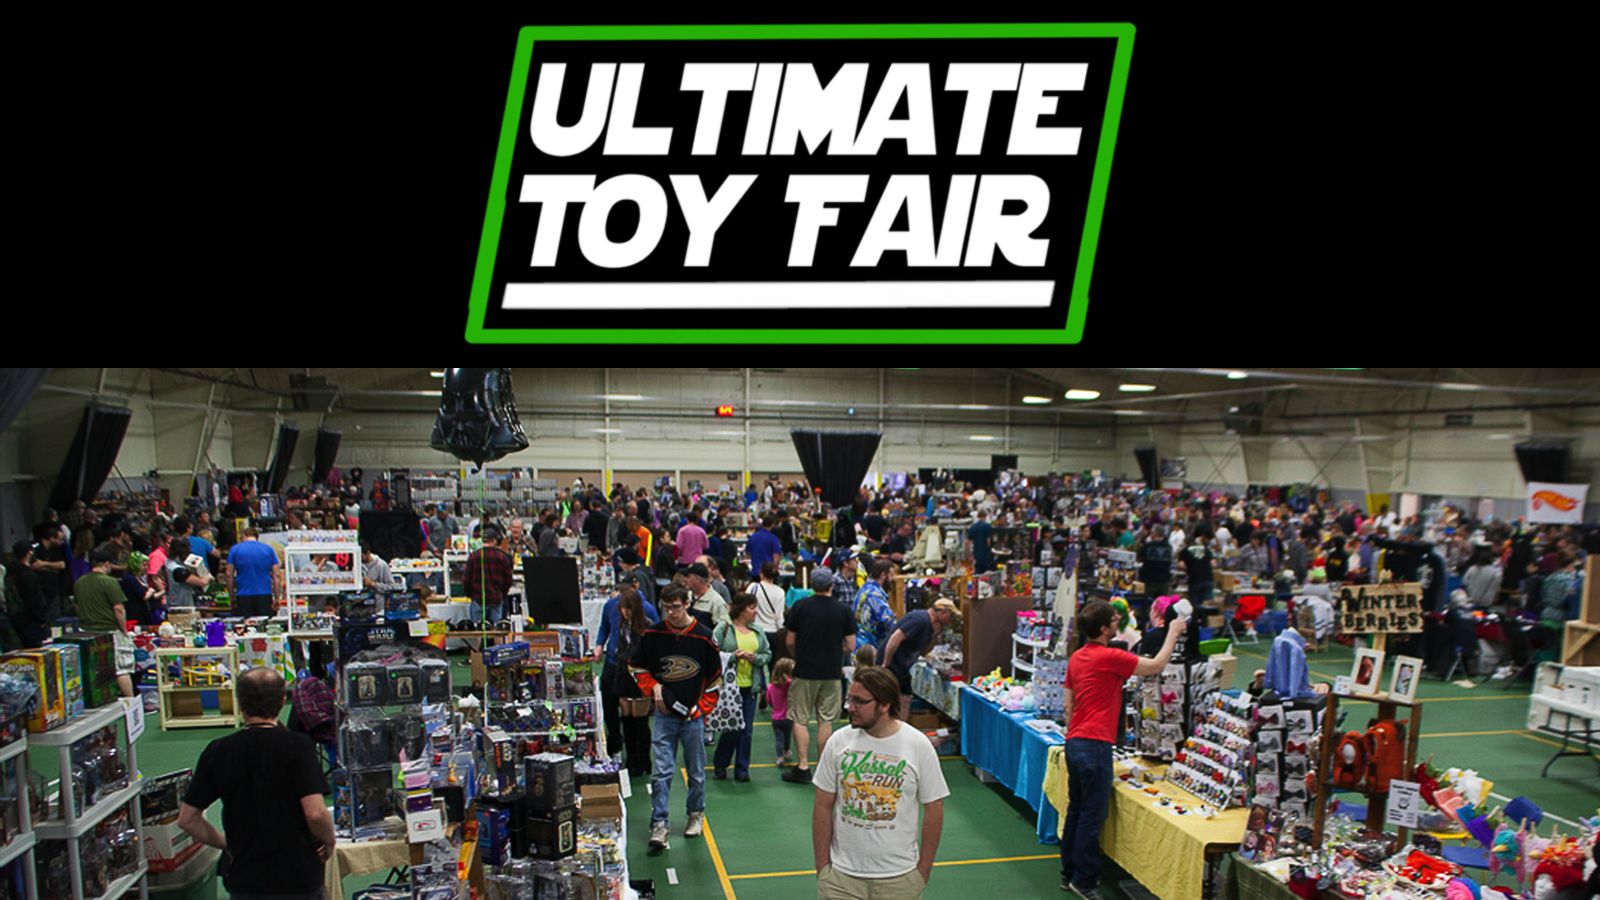 Ultimate Toy Fair, Victoria, British Columbia, Canada